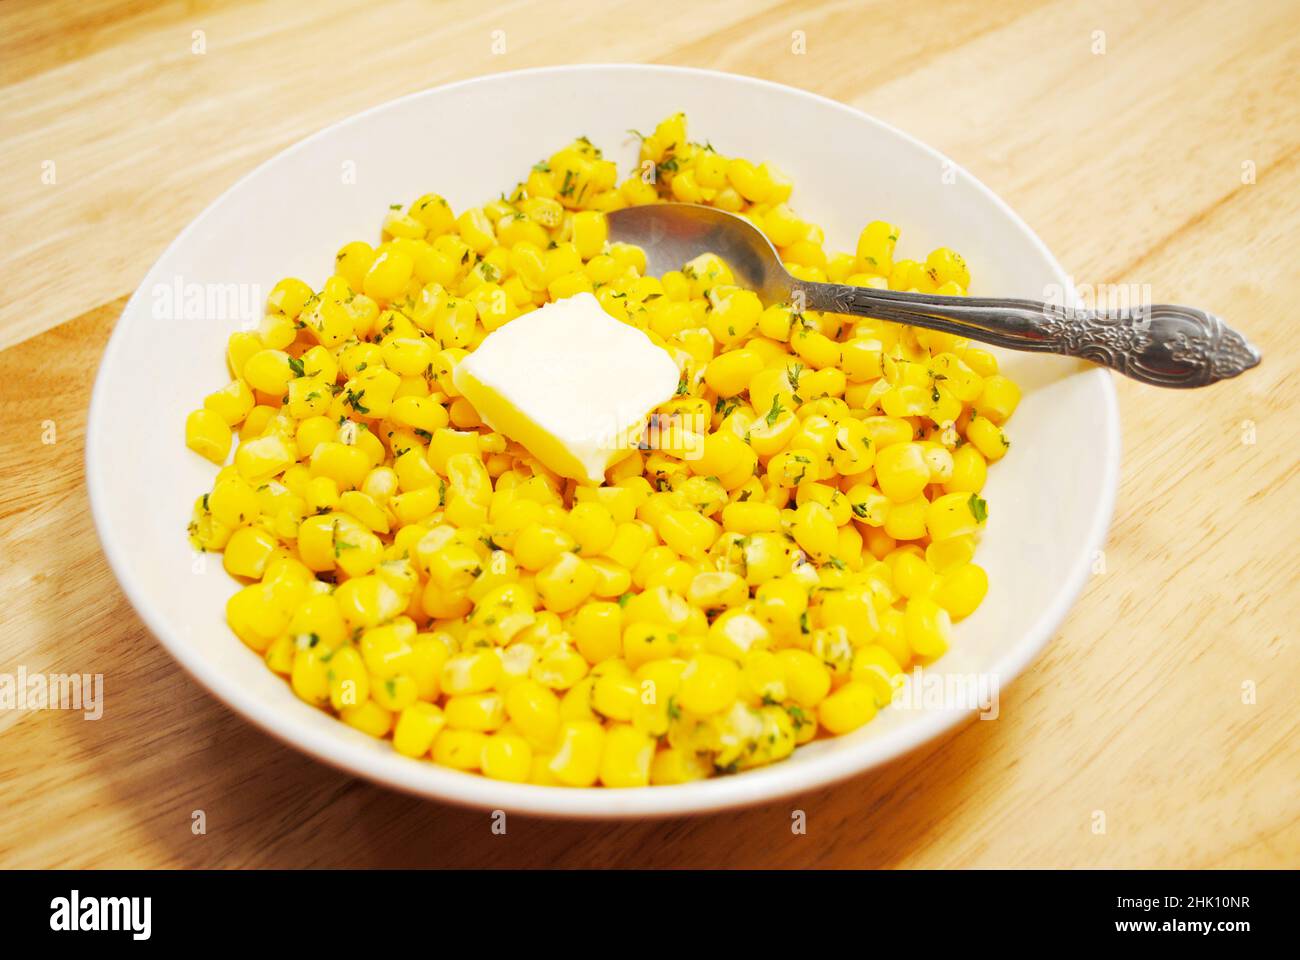 Frischer gelber Mais in einer weißen Schüssel mit einer Pat Butter serviert Stockfoto